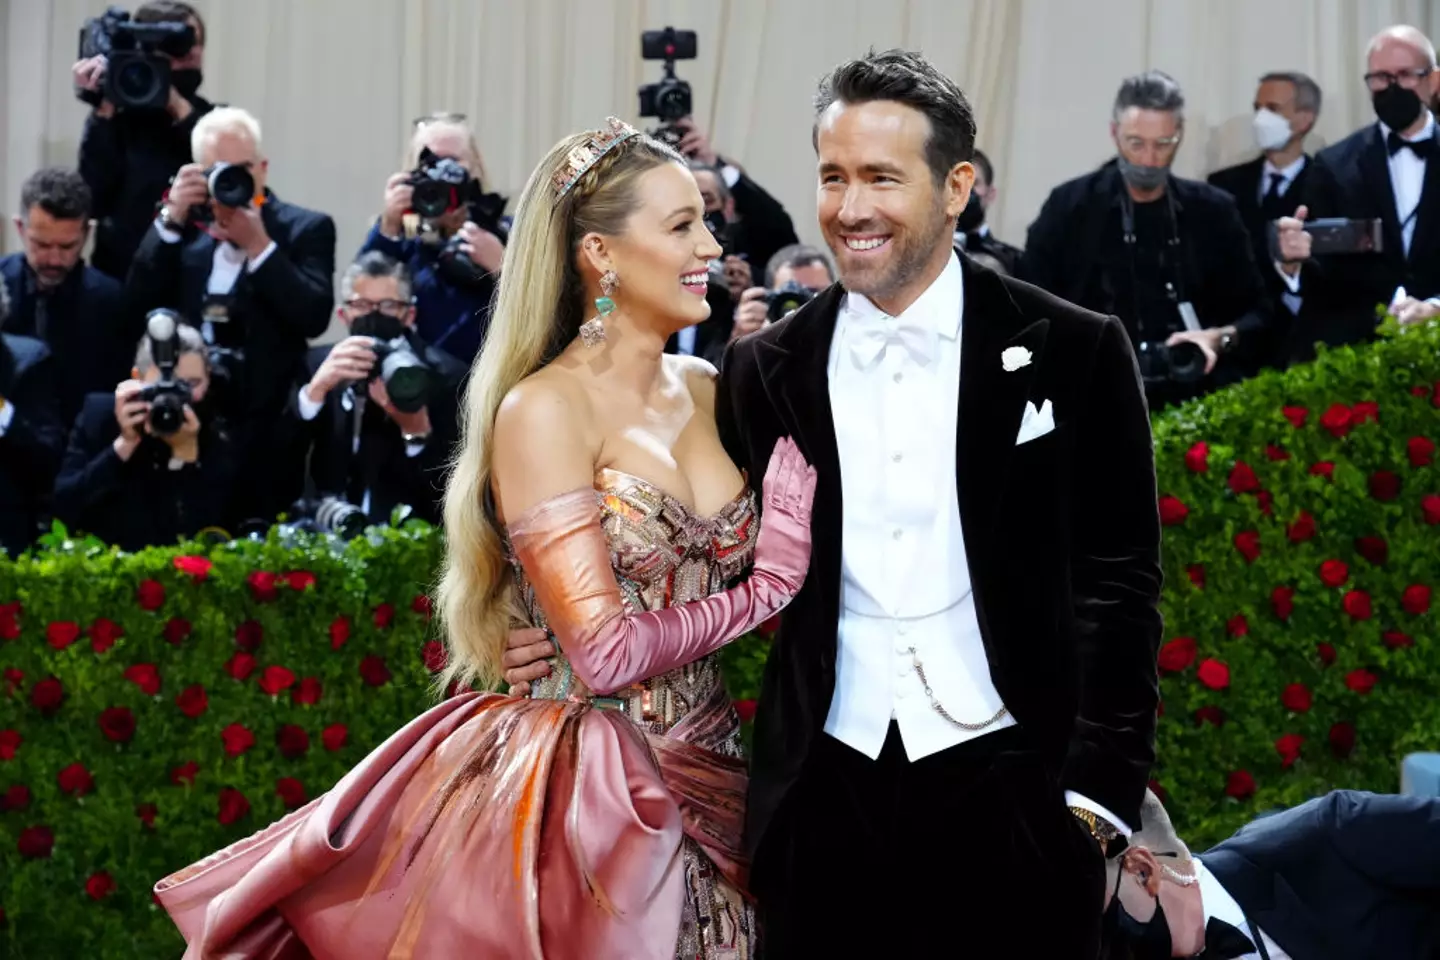 Blake Lively and Ryan Reynolds at the 2022 Met Gala. (Jeff Kravitz/FilmMagic)